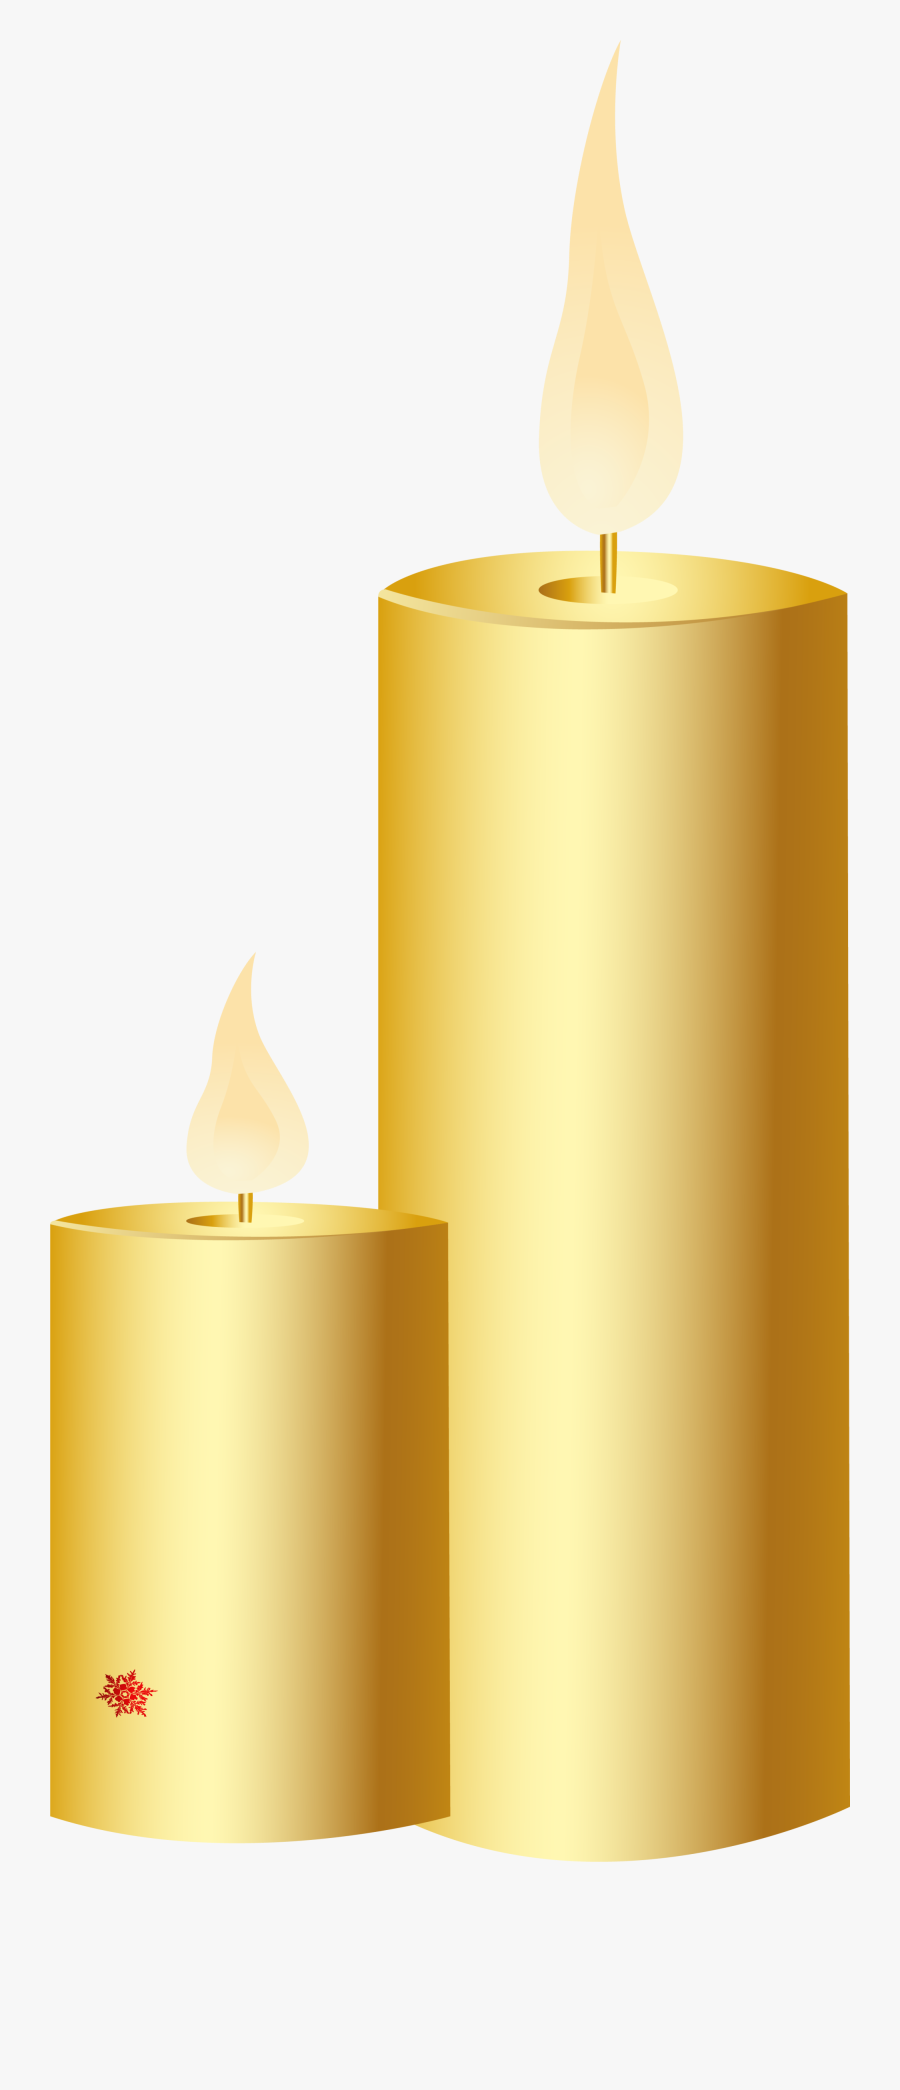 Transparent Candle Light Clipart - Paper Lantern, Transparent Clipart